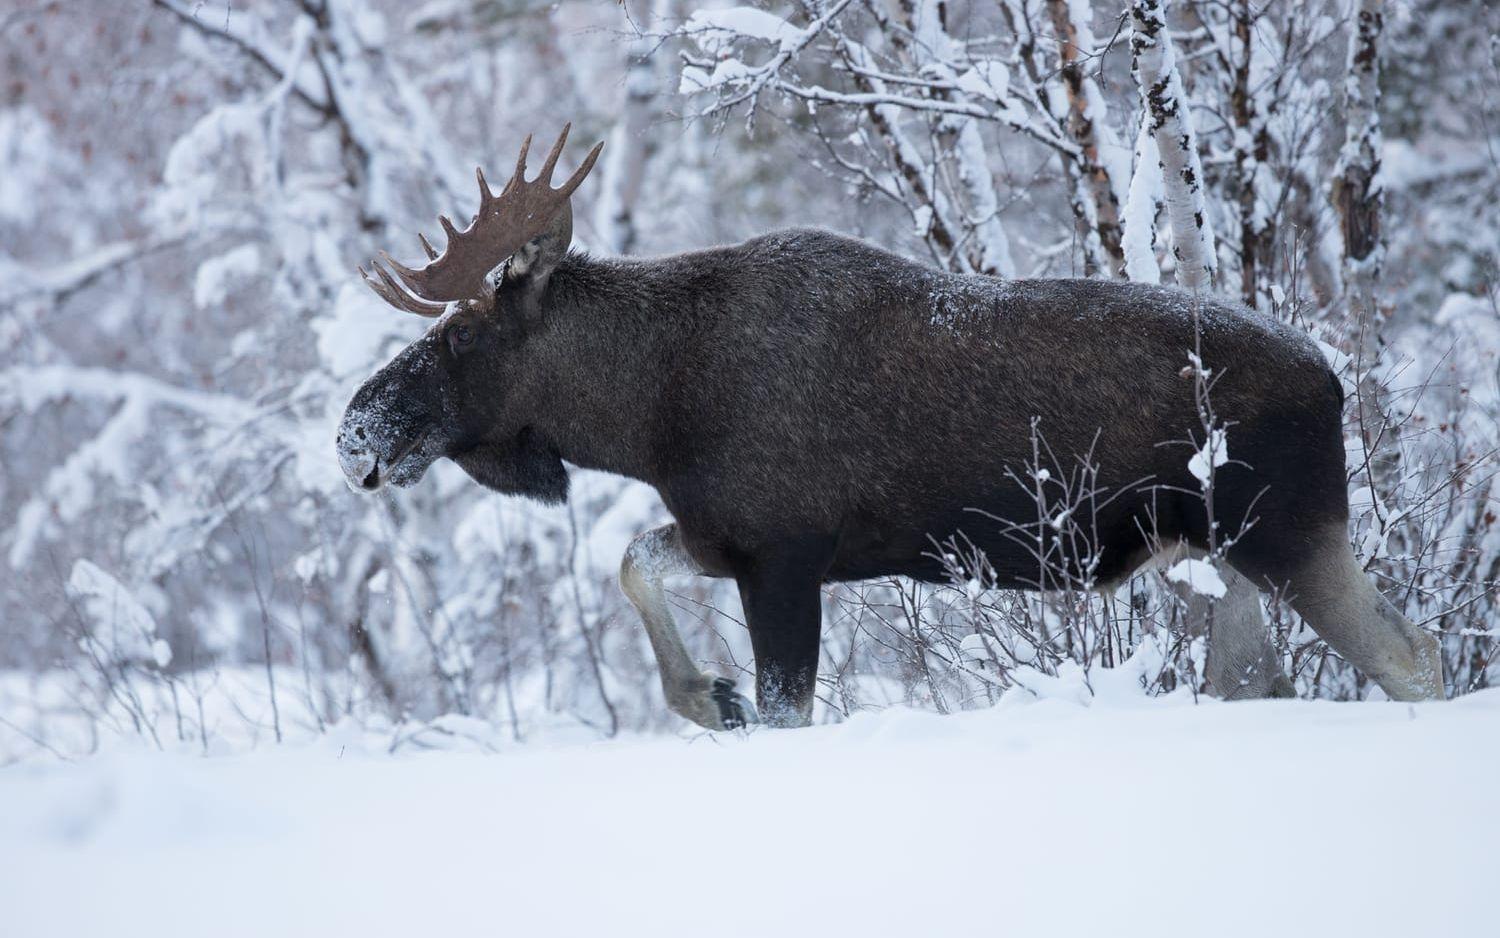 Älgtjuren är från Lappland där Kristoffer Sahlén har fotograferat vinterälg ett antal år.